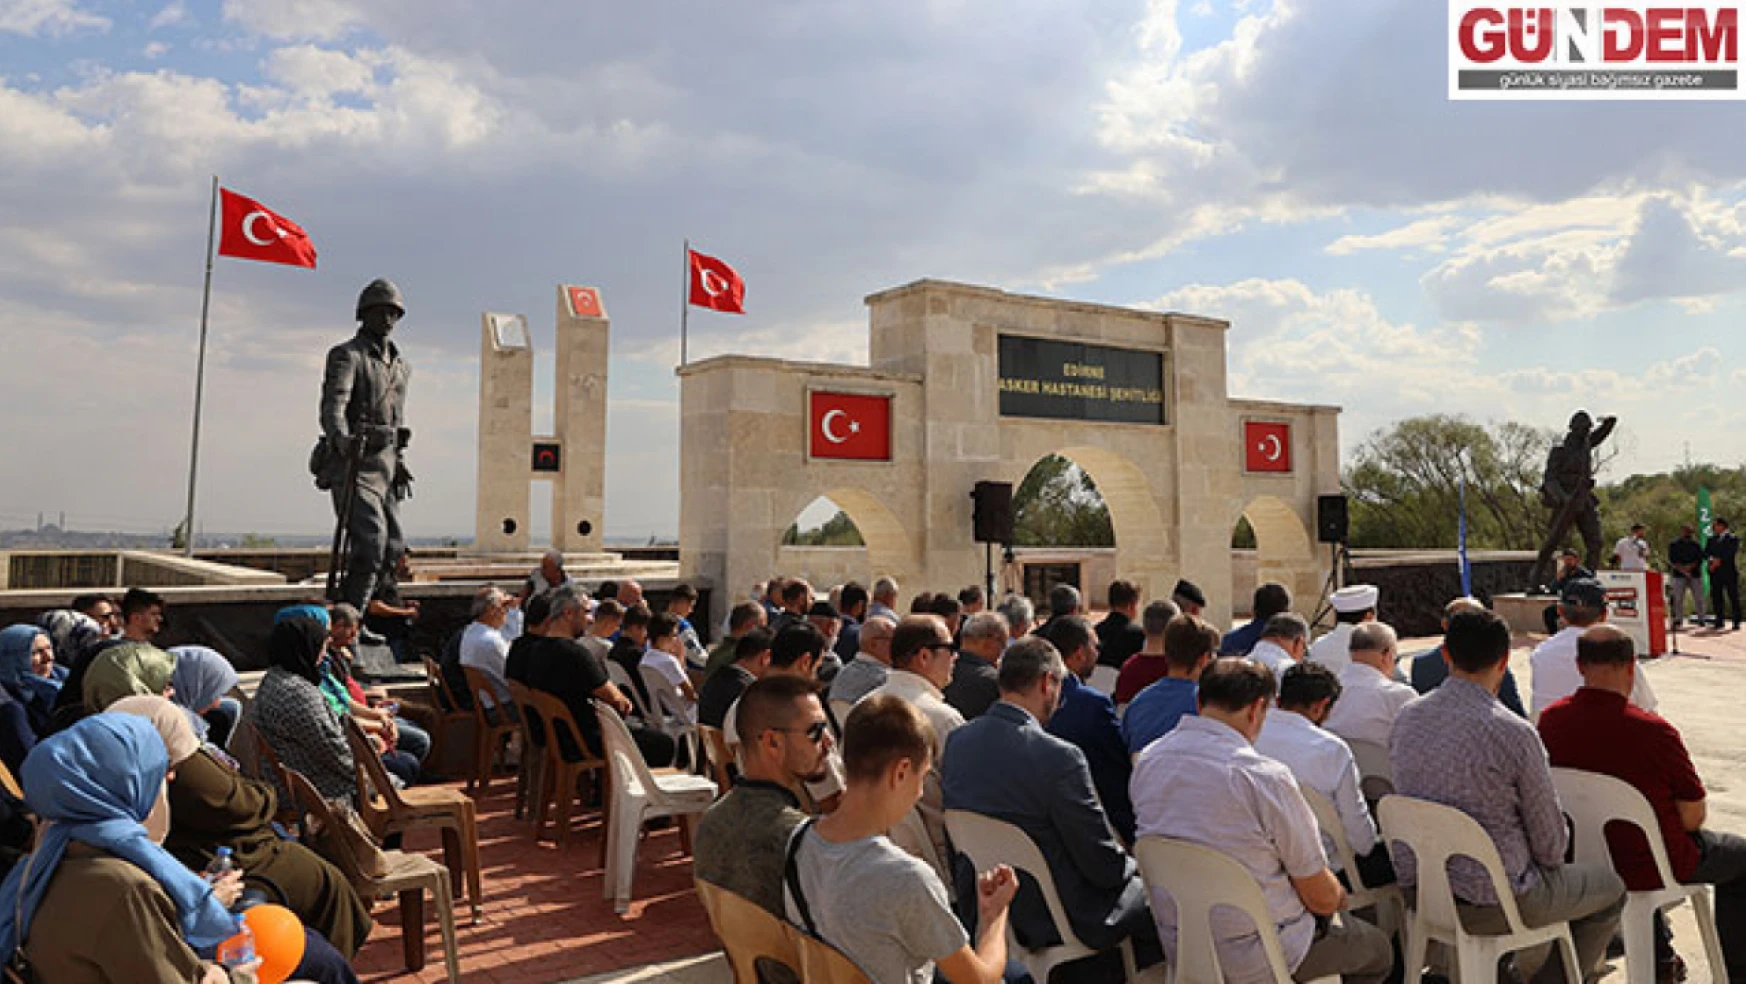 Edirne Asker Hastanesi Şehitliği'nde anma töreni düzenlendi